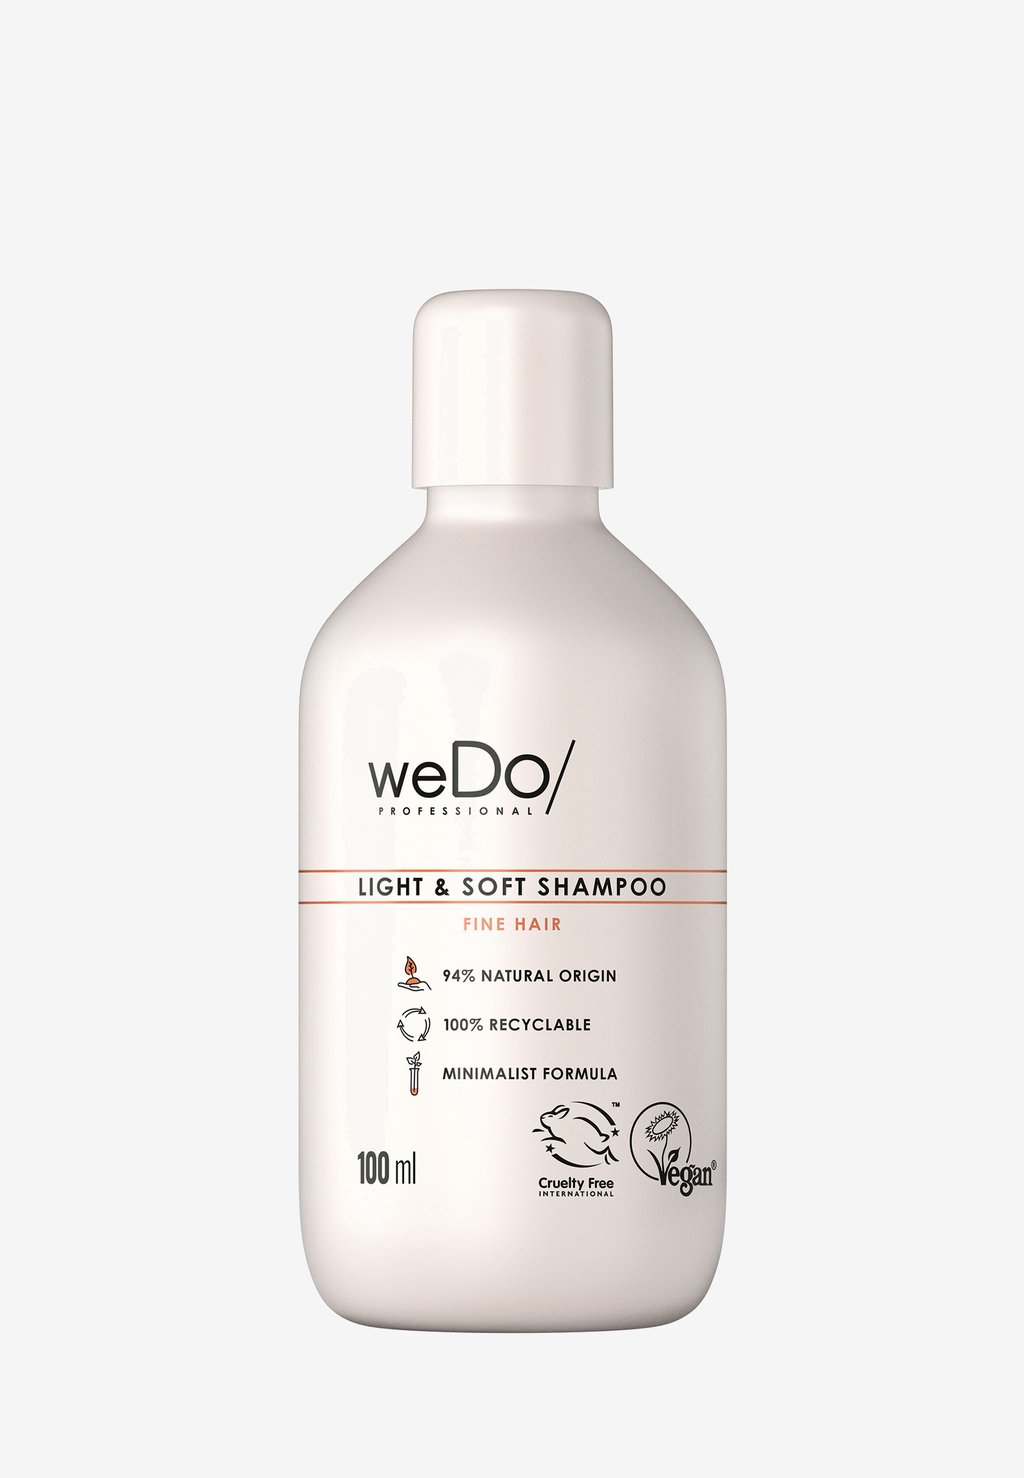 Шампунь Light & Soft Shampoo weDo/ Professional люстра wedo light 75285 01 09 08 marcus